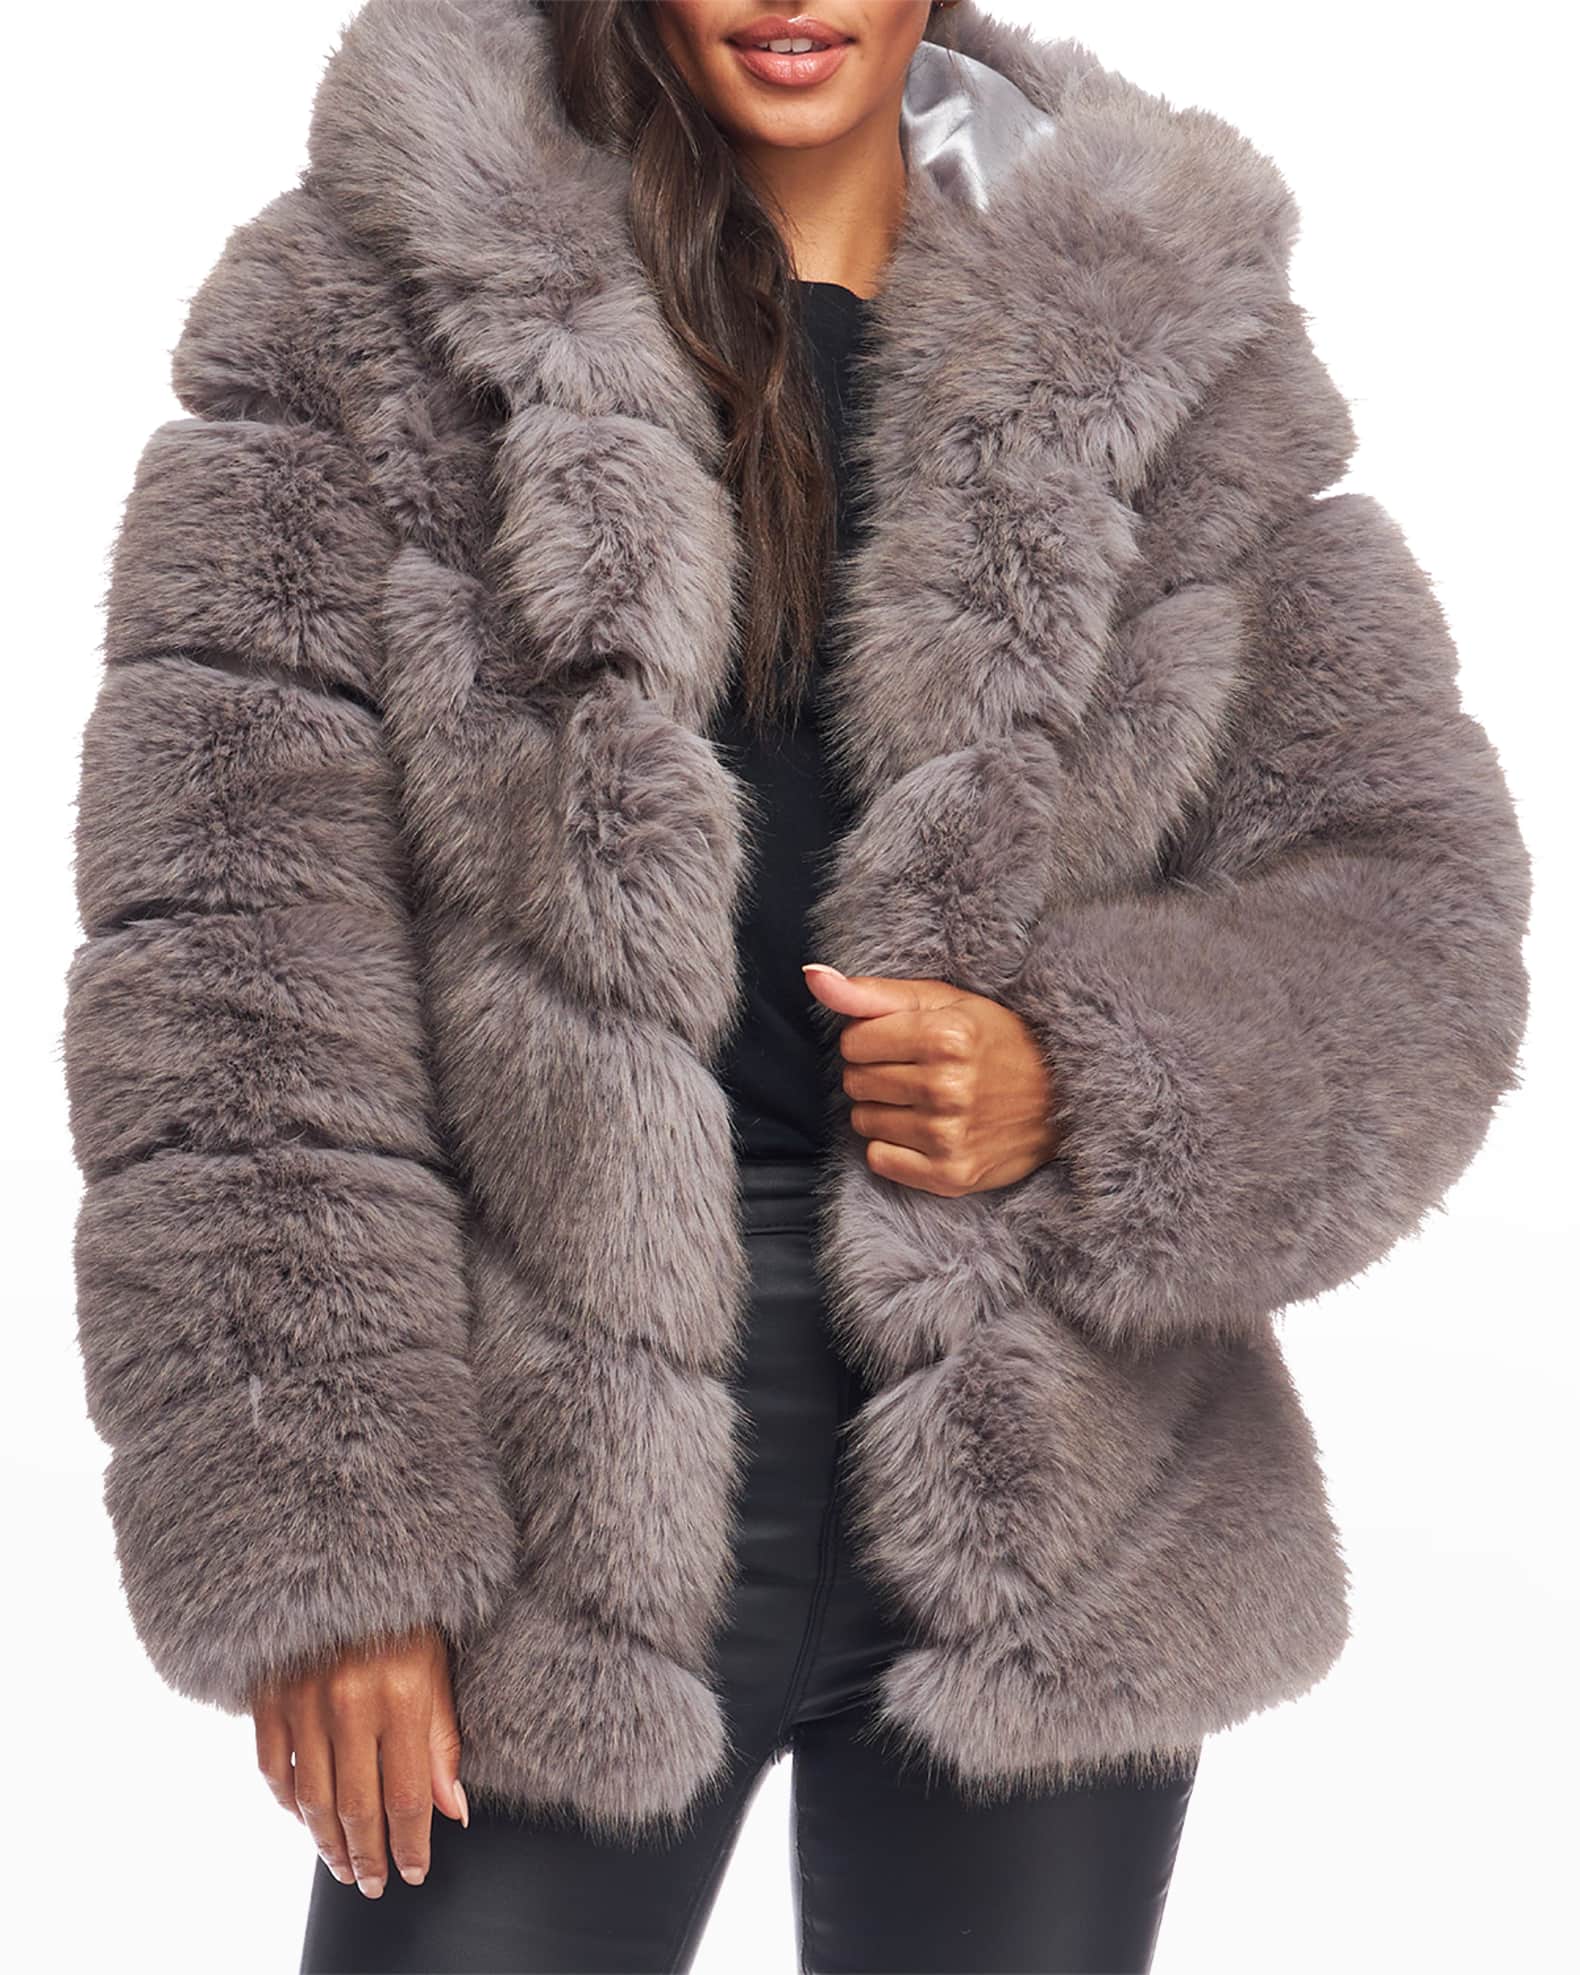 Fabulous Furs Chateau Oversize Chevron Faux Fur Coat | Neiman Marcus